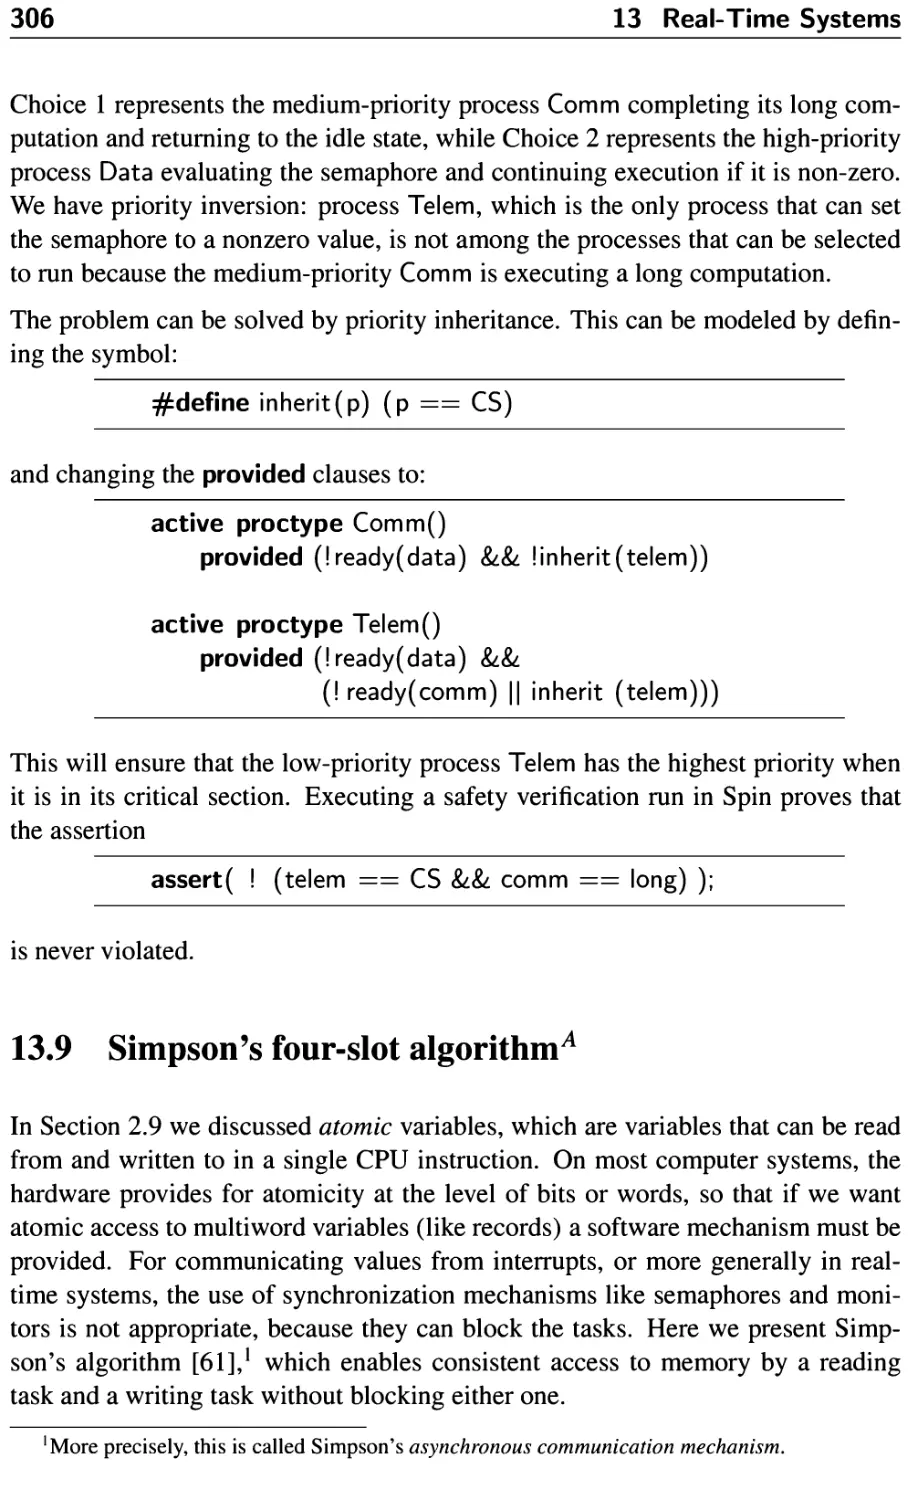 13.9 Simpson’s four-slot algorithm